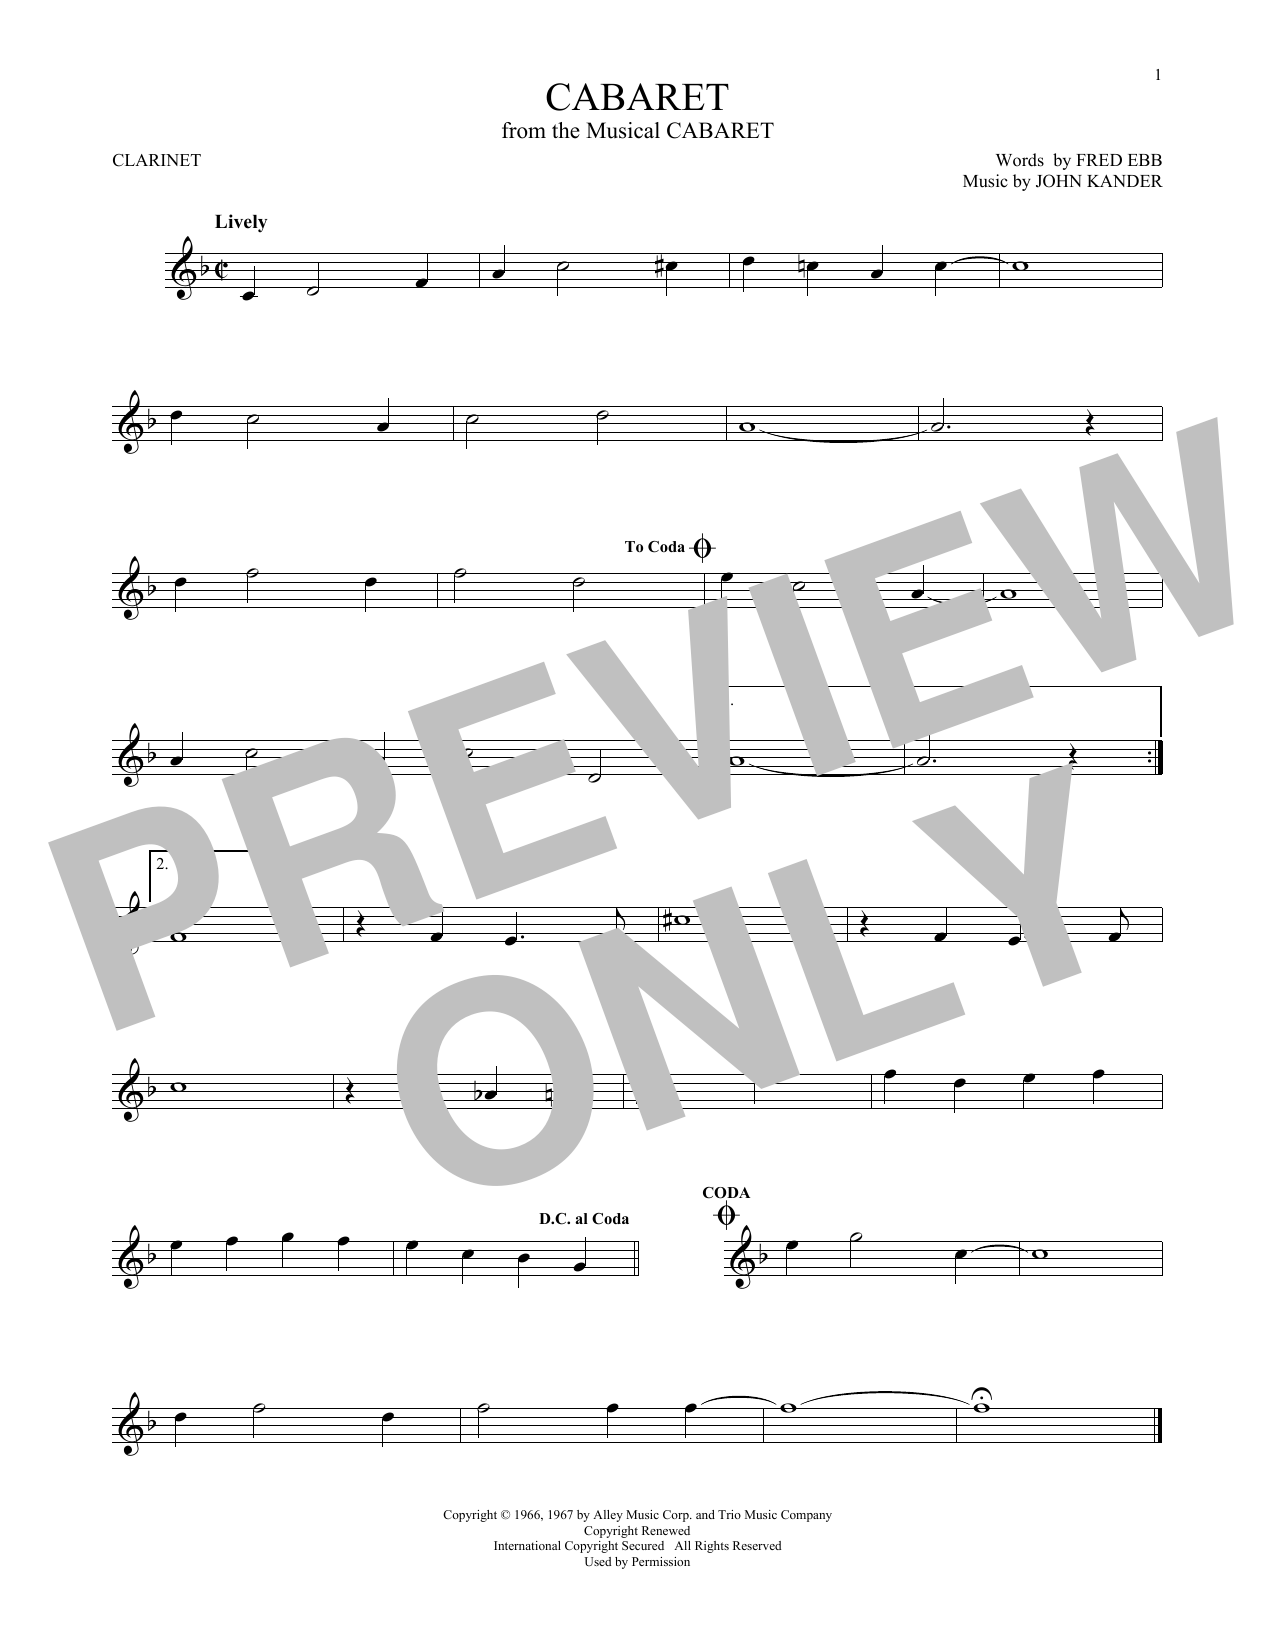 John Kander & Fred Ebb Cabaret Sheet Music Notes & Chords for Viola - Download or Print PDF